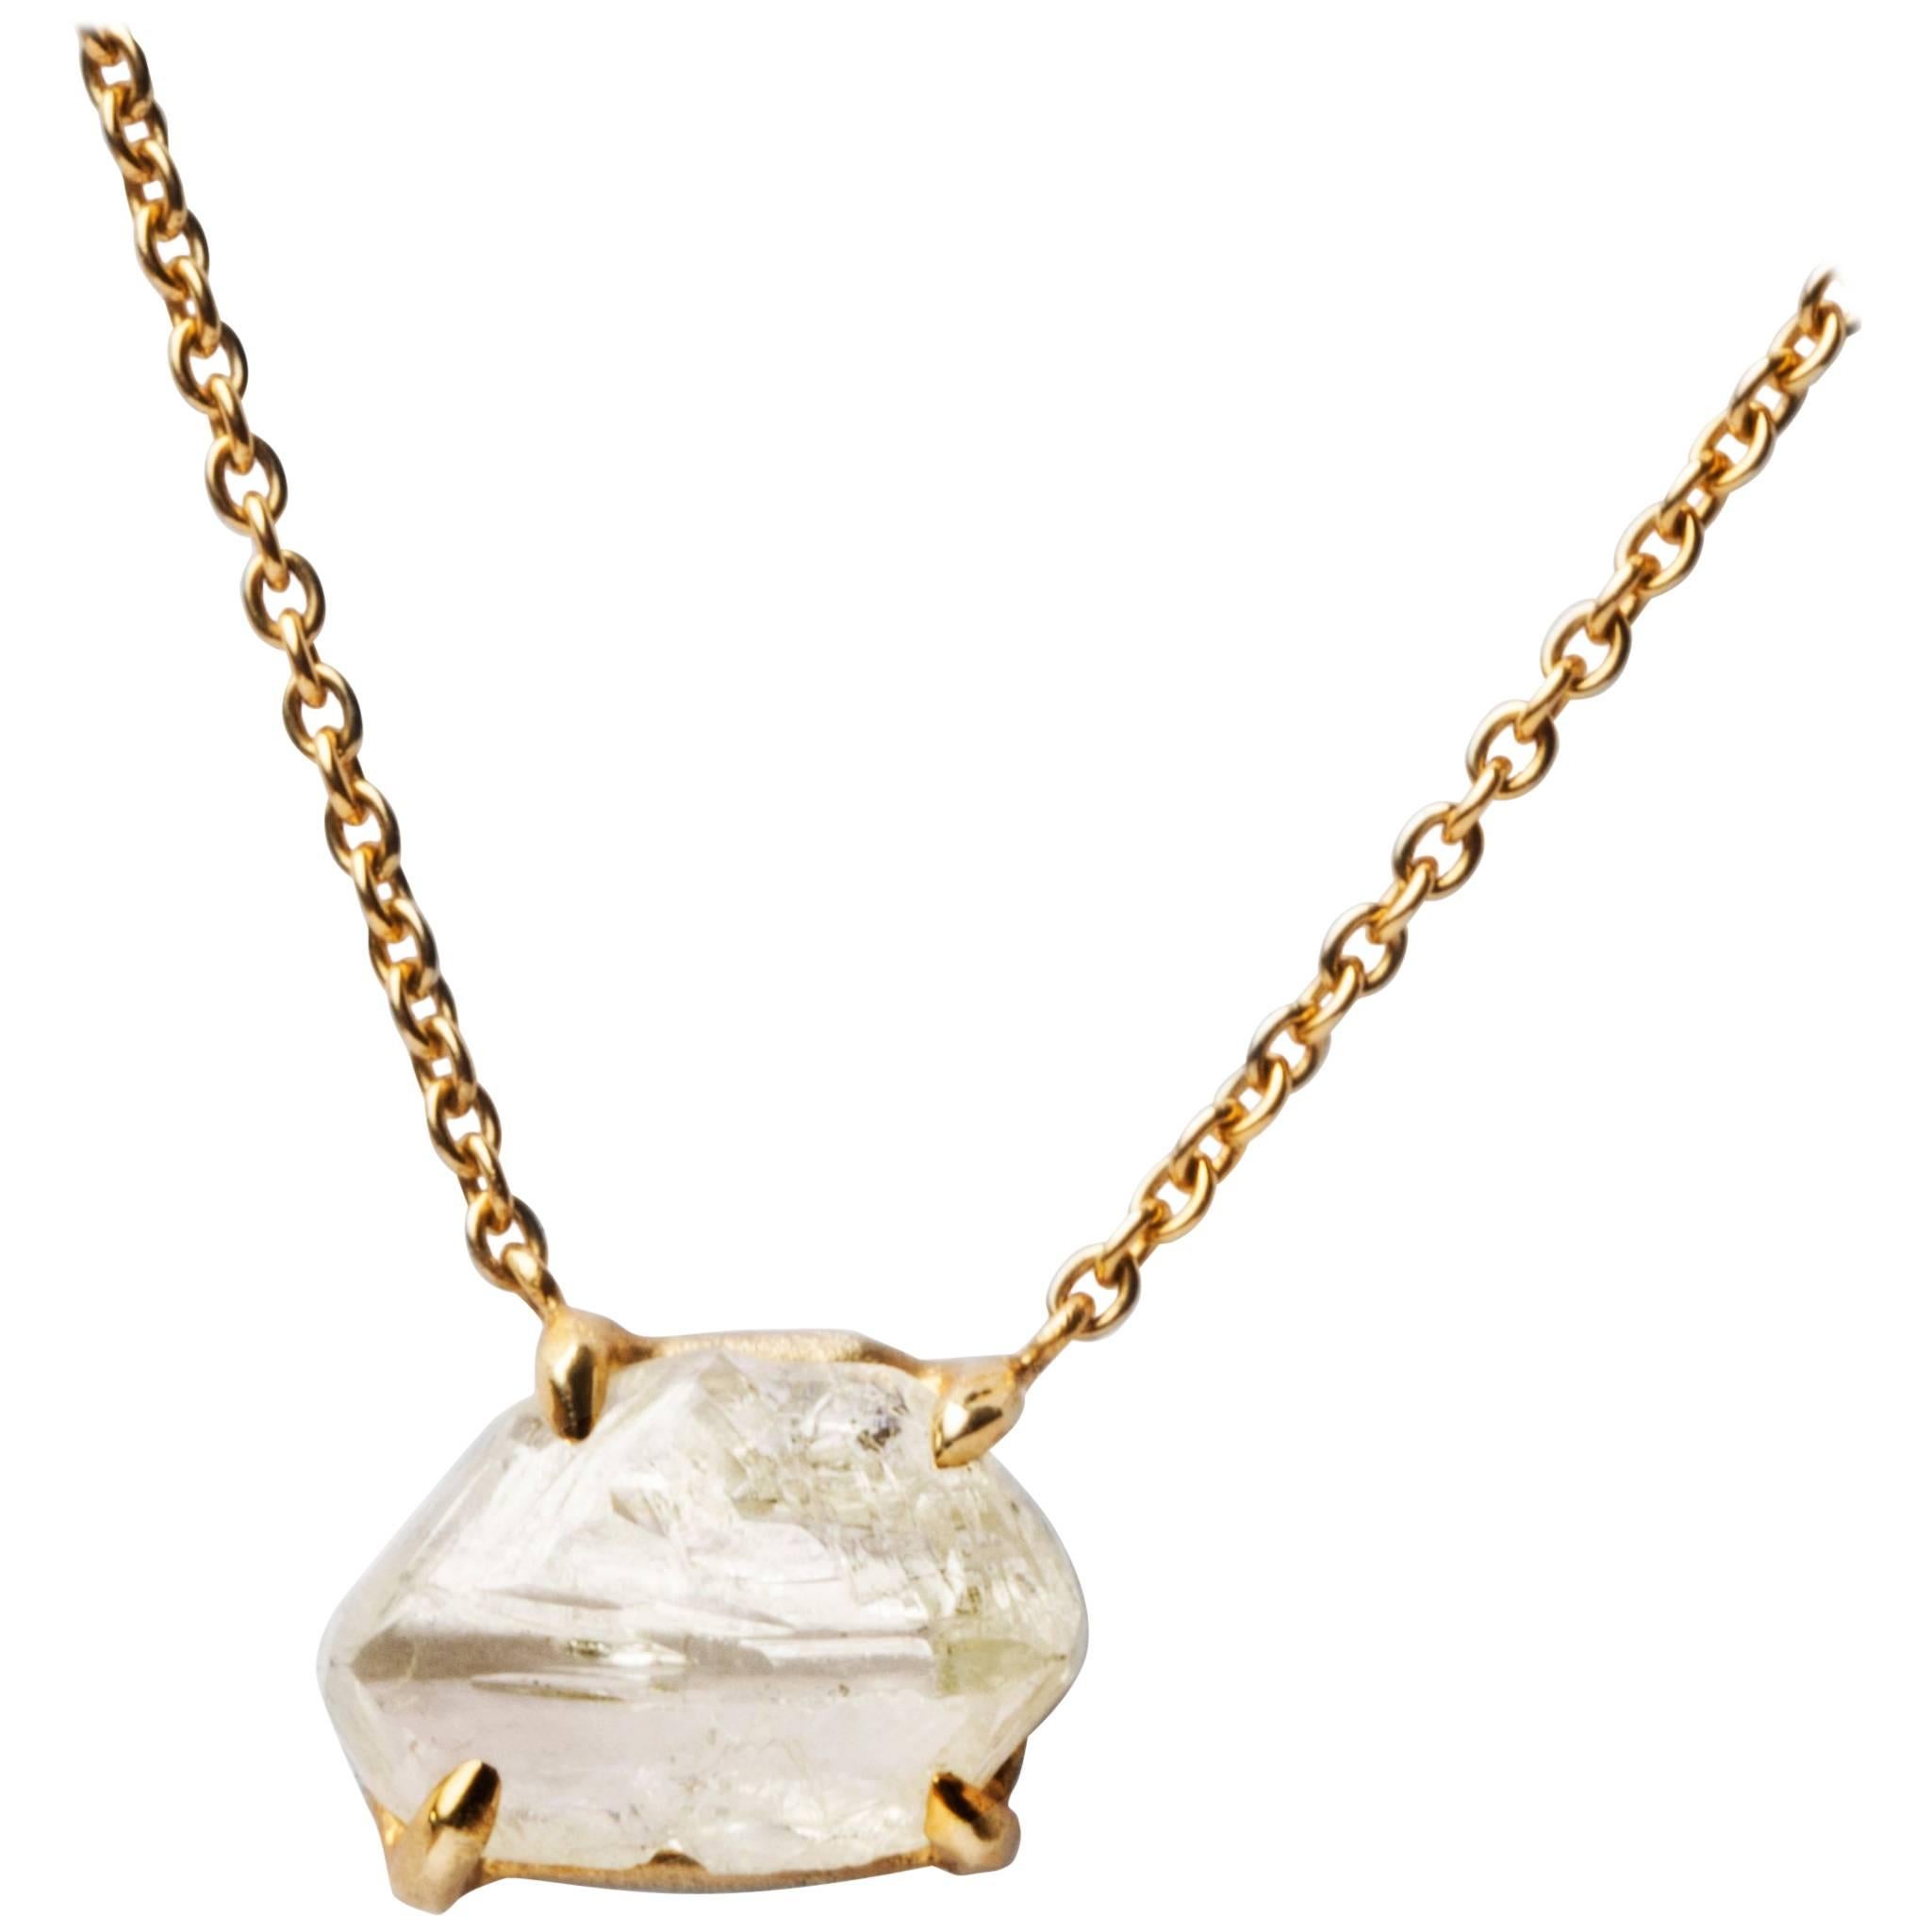 5.62 Carat Rough White Diamond Drop Pendant Necklace For Sale